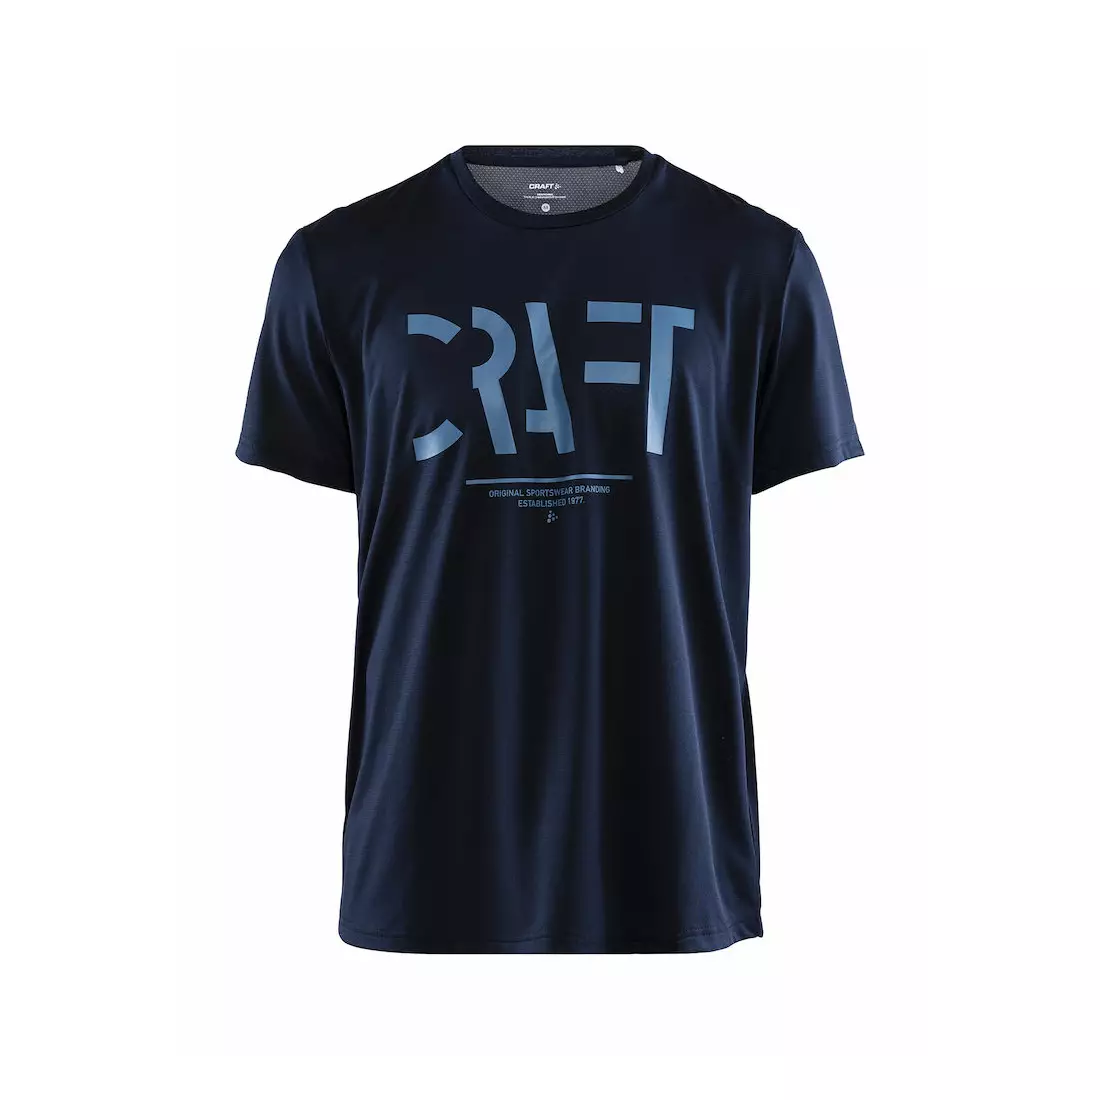 CRAFT EAZE MESH pánske športové / bežecké tričko tmavomodré 1907018-396000